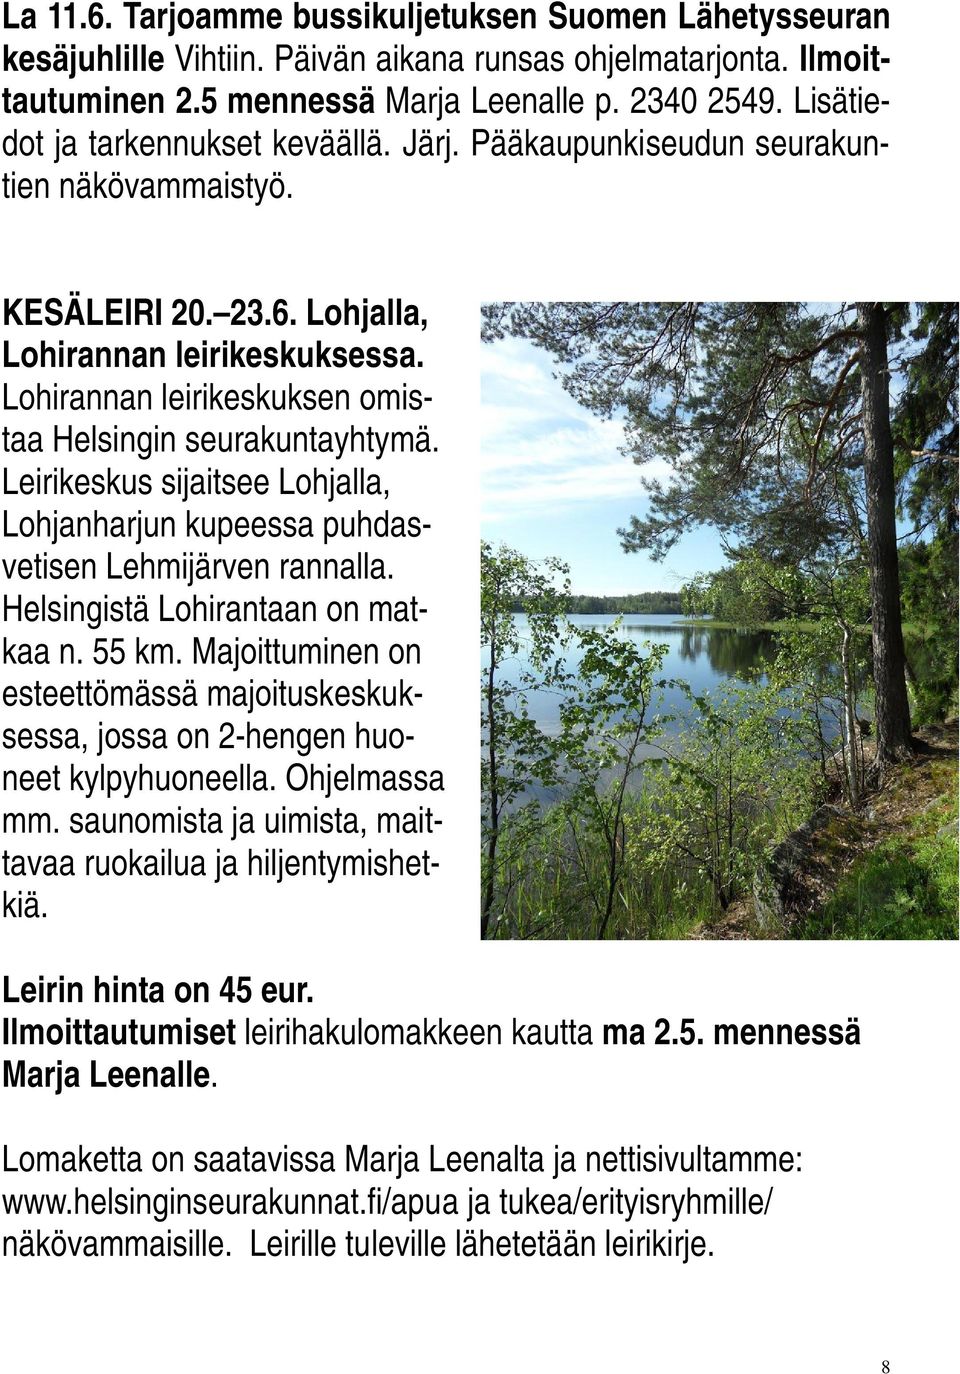 Lohirannan leirikeskuksen omistaa Helsingin seurakuntayhtymä. Leirikeskus sijaitsee Lohjalla, Lohjanharjun kupeessa puhdasvetisen Lehmijärven rannalla. Helsingistä Lohirantaan on matkaa n. 55 km.